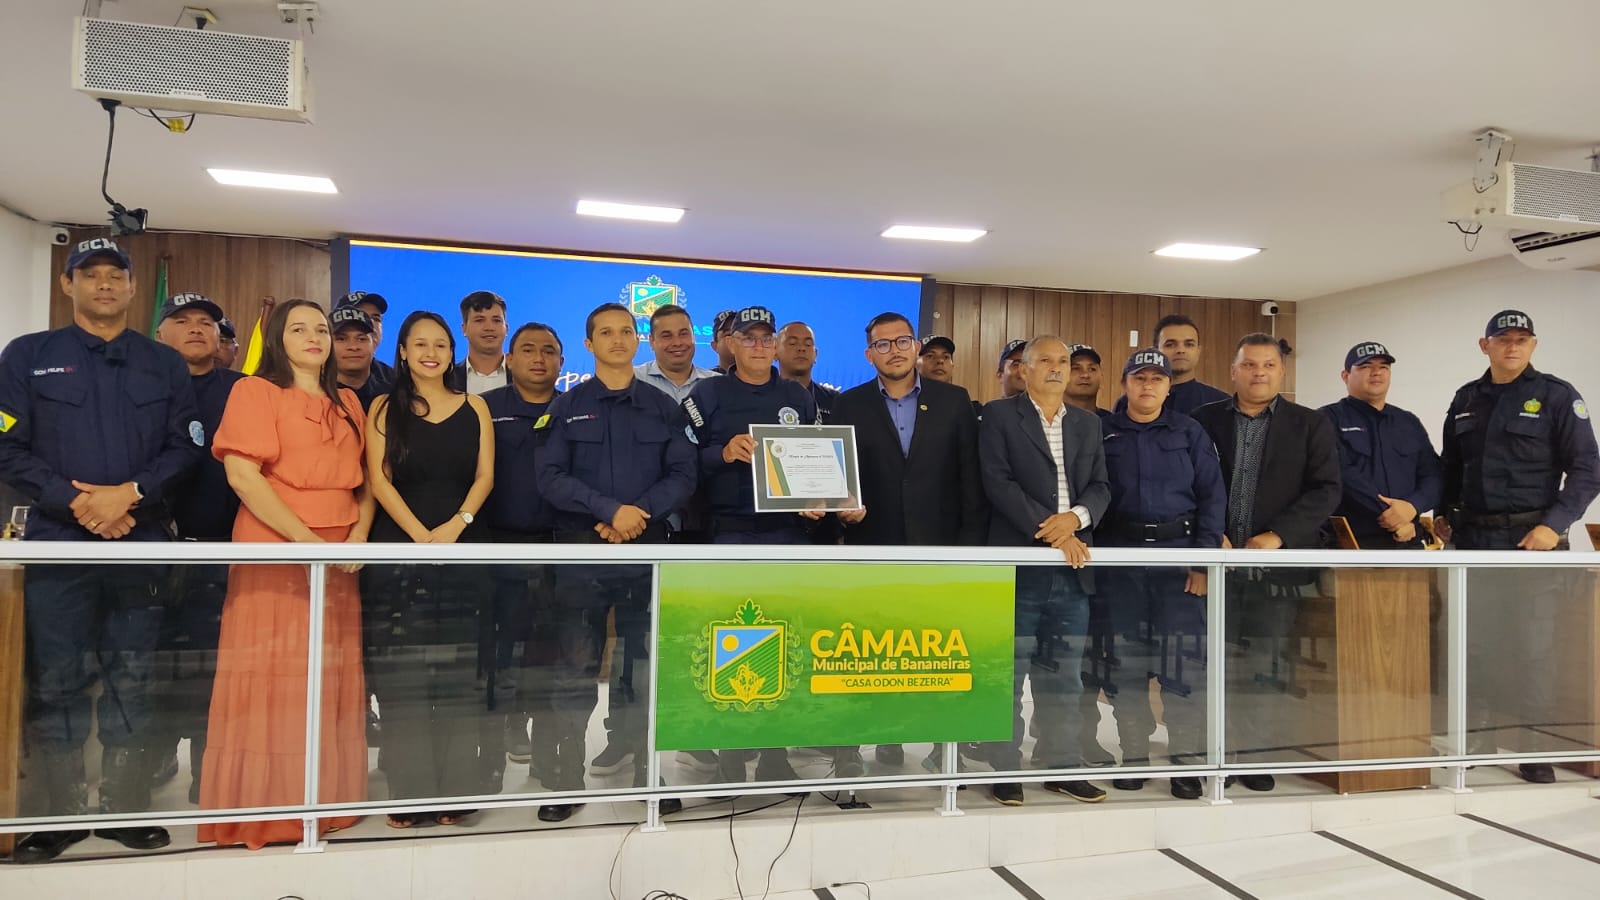 Guarda Civil Municipal recebe Moção de Aplausos da Casa Odon Bezerra, em alusão ao 15º aniversário